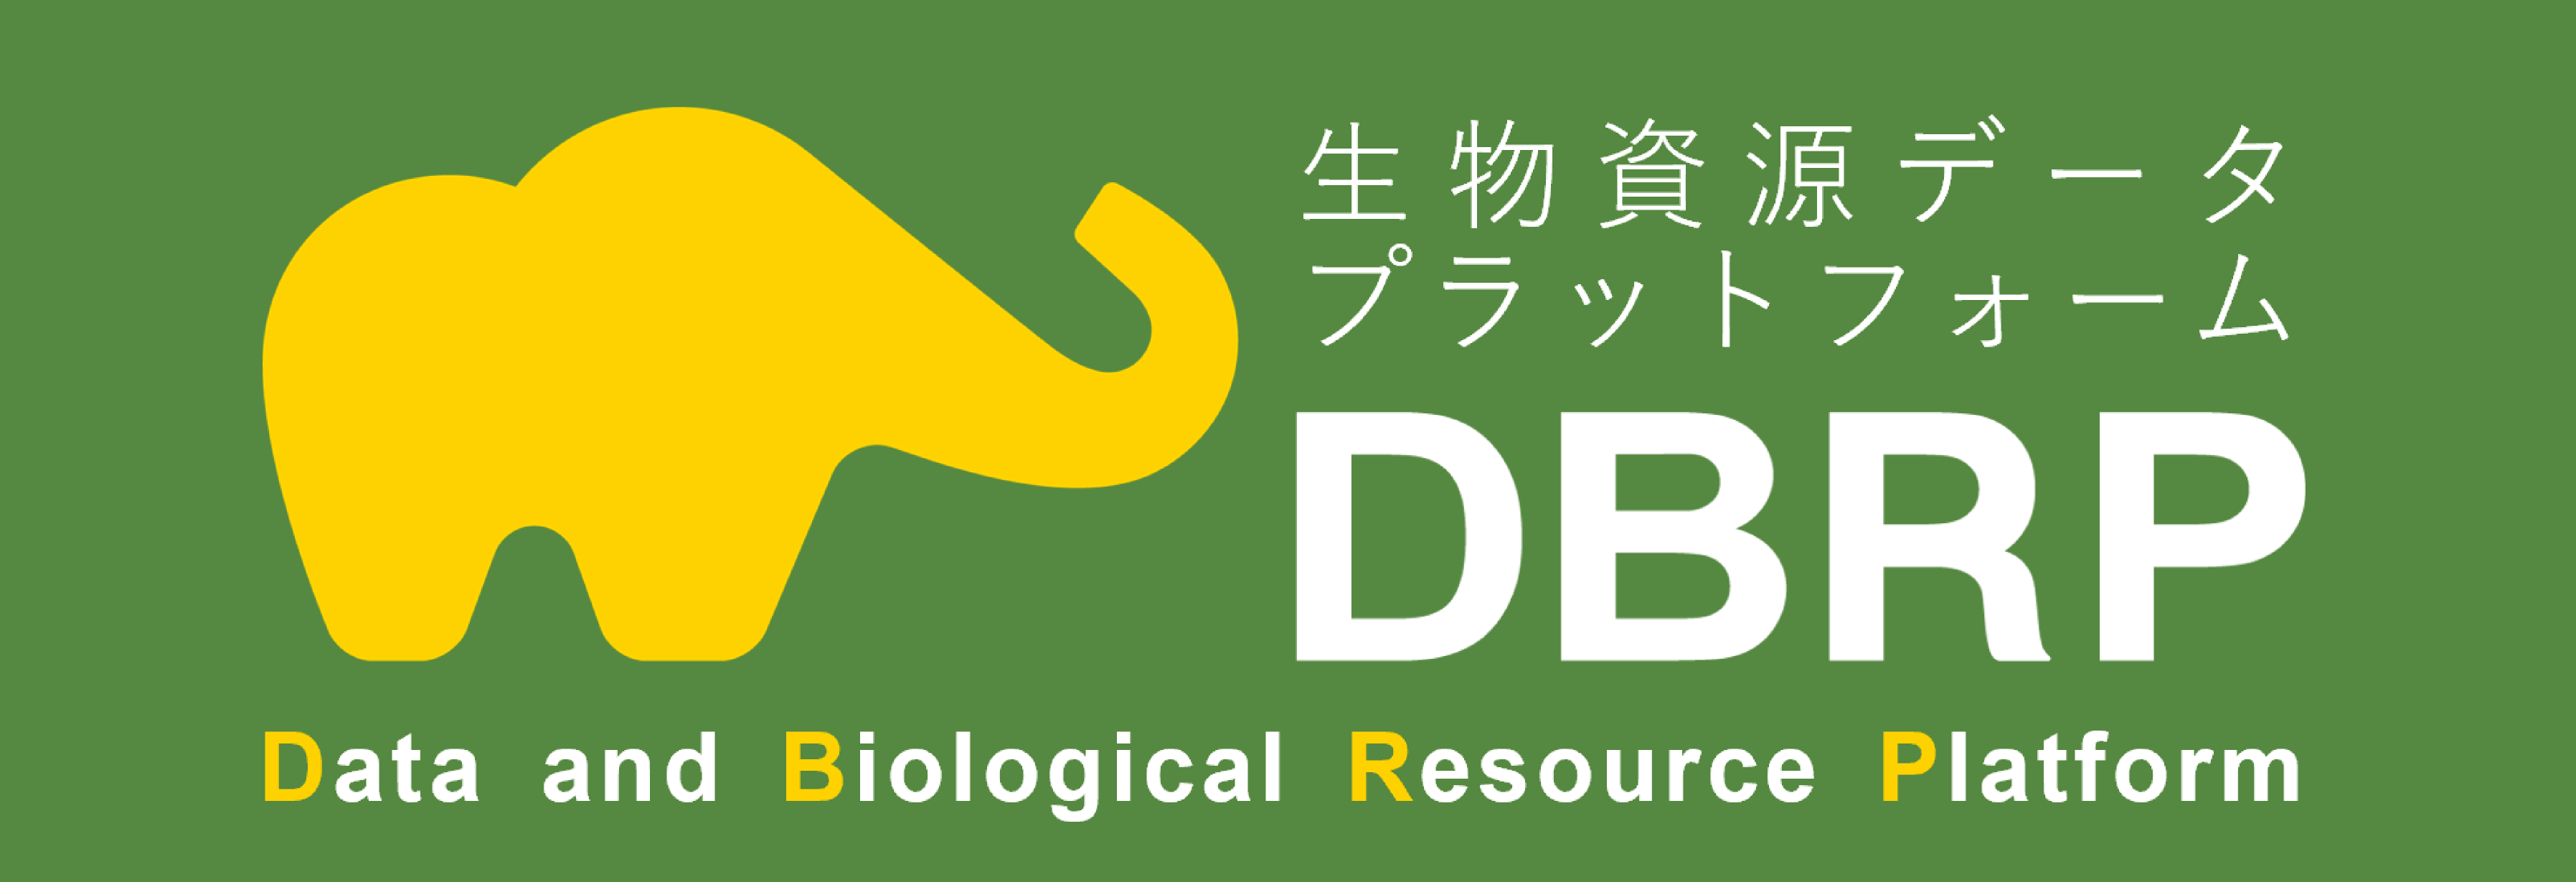 DBRP（生物資源データプラットフォーム）へのリンク